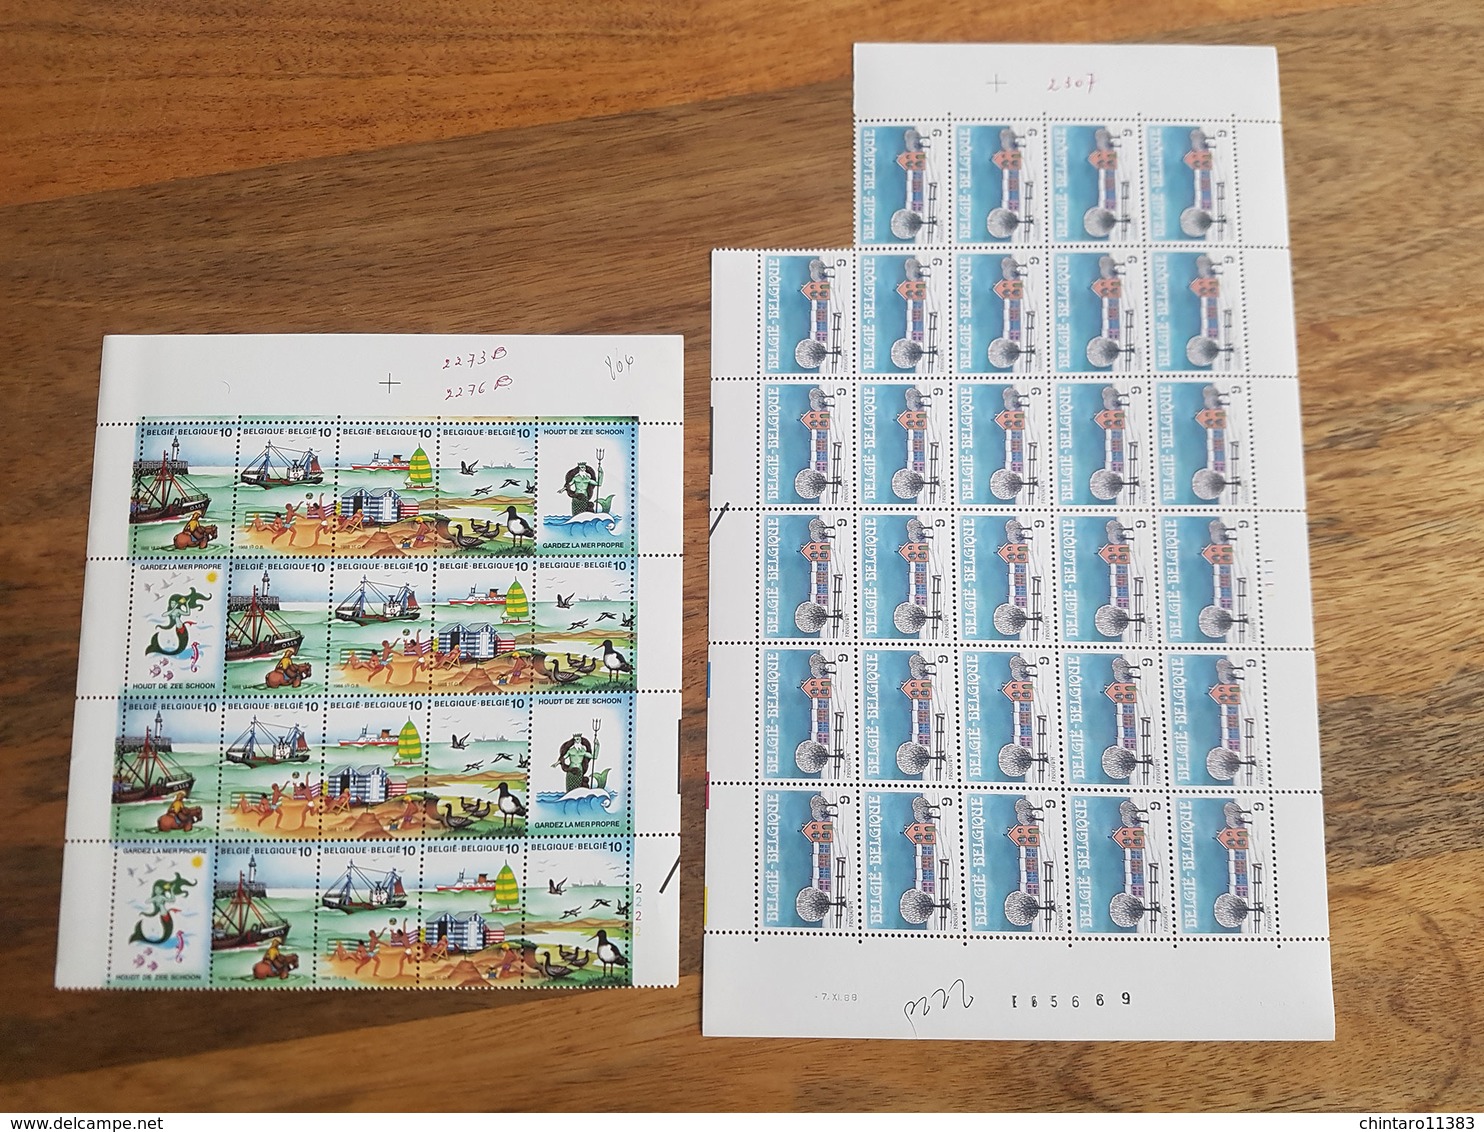 Lot feuilles incomplètes de timbres Belgique - Année 1988